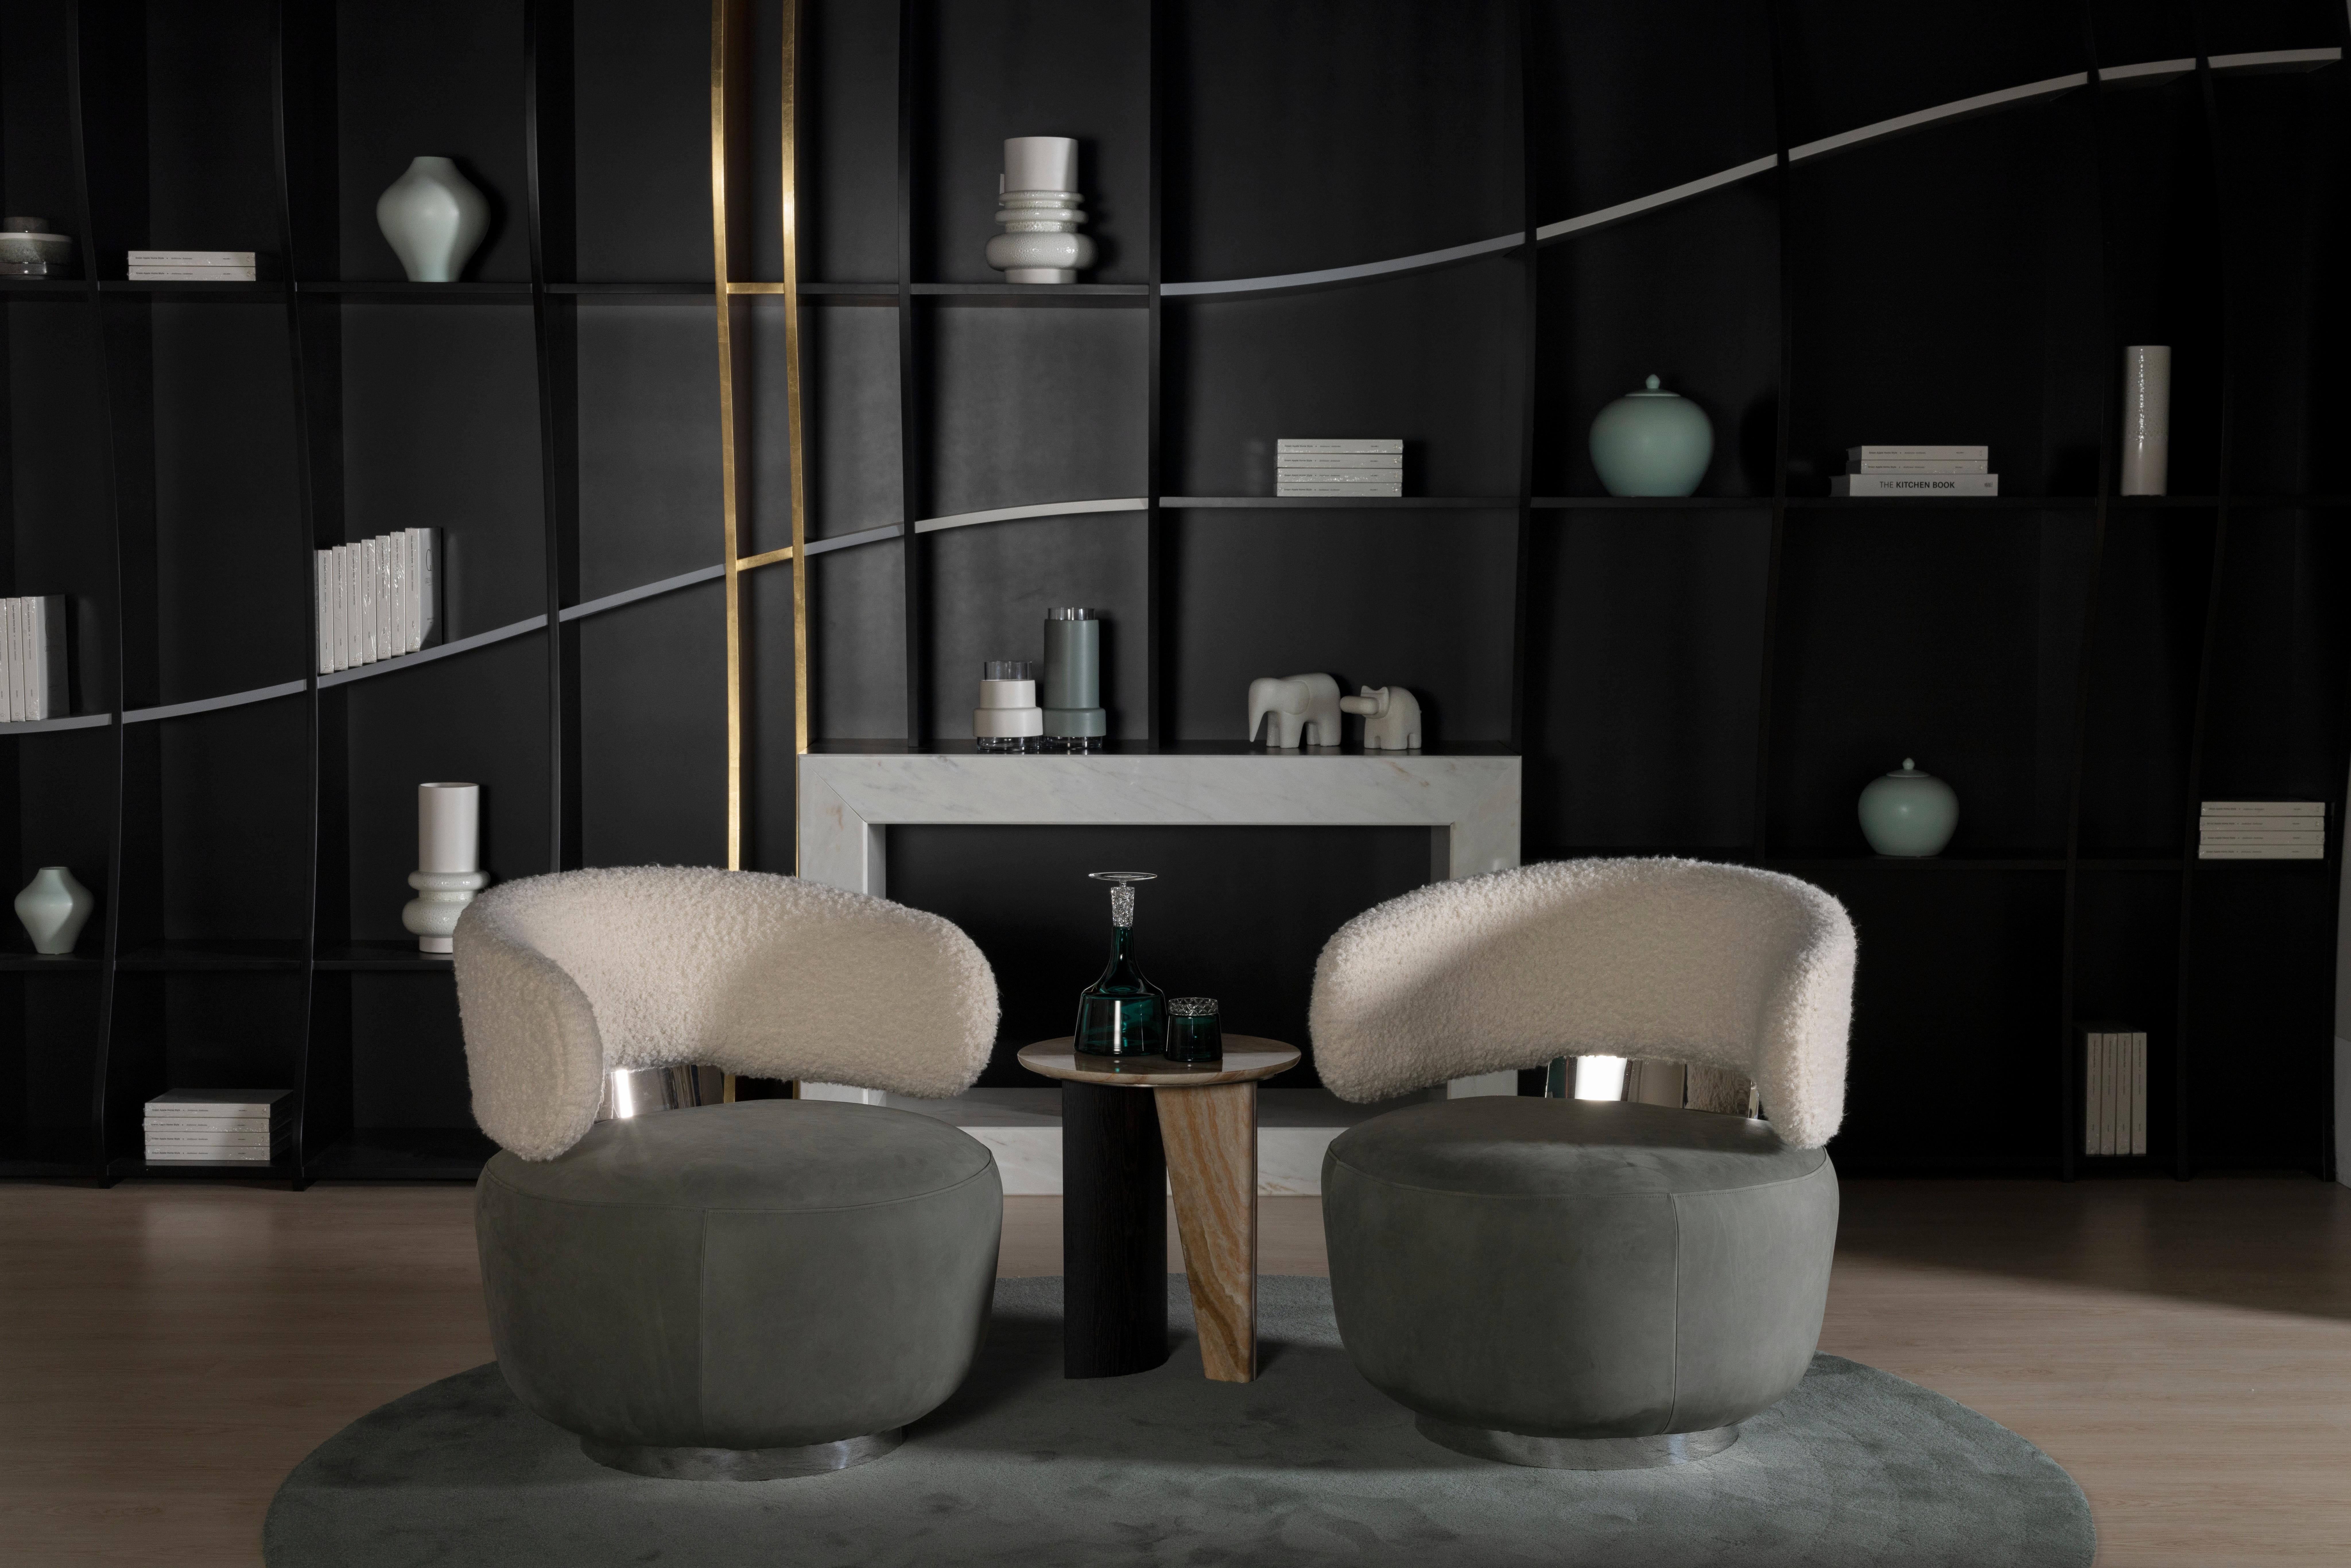 Caju Swivel Lounge Chair, Contemporary Collection, handgefertigt in Portugal - Europa von Greenapple.

Der Loungesessel Caju ist ein trendiges Möbelstück, das die organische Form einer Cashew verkörpert. Das Design des mit Wollbouclé und